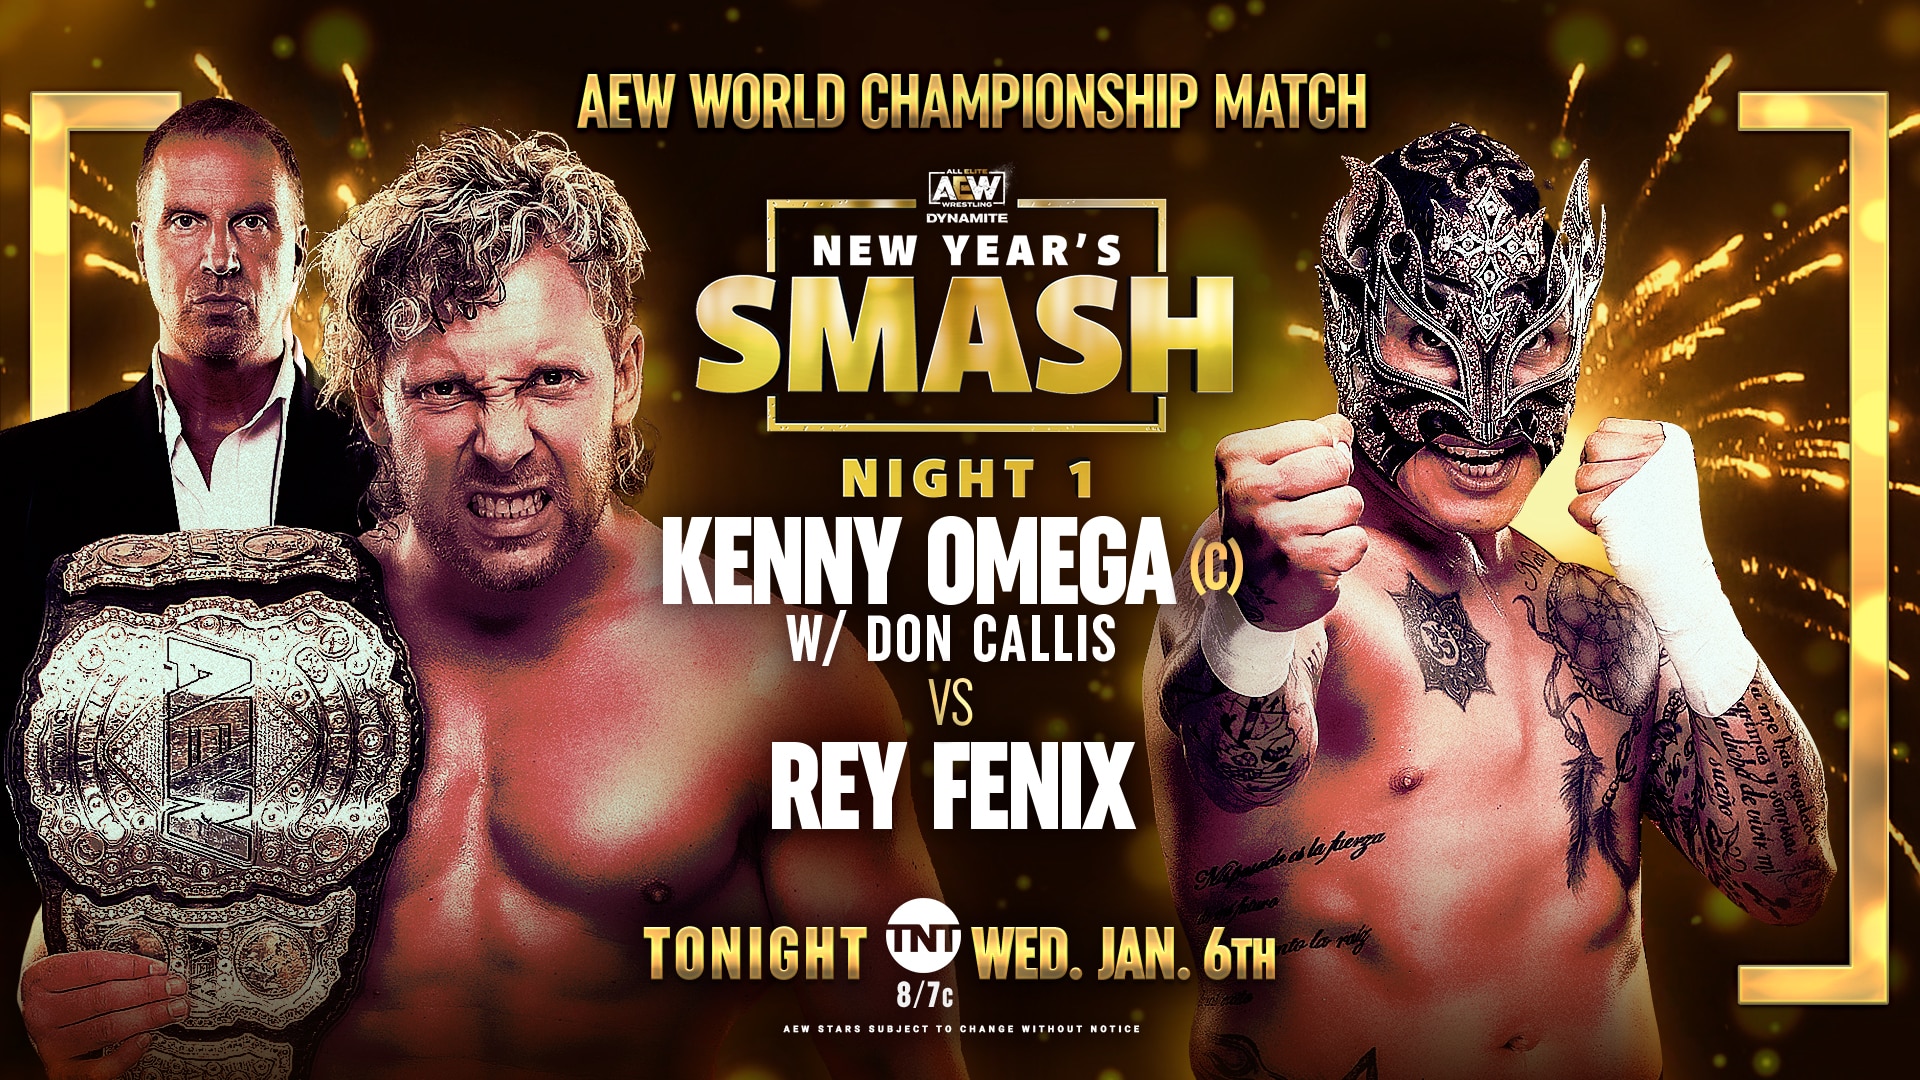 Kenny Omega vs Rey Fenix